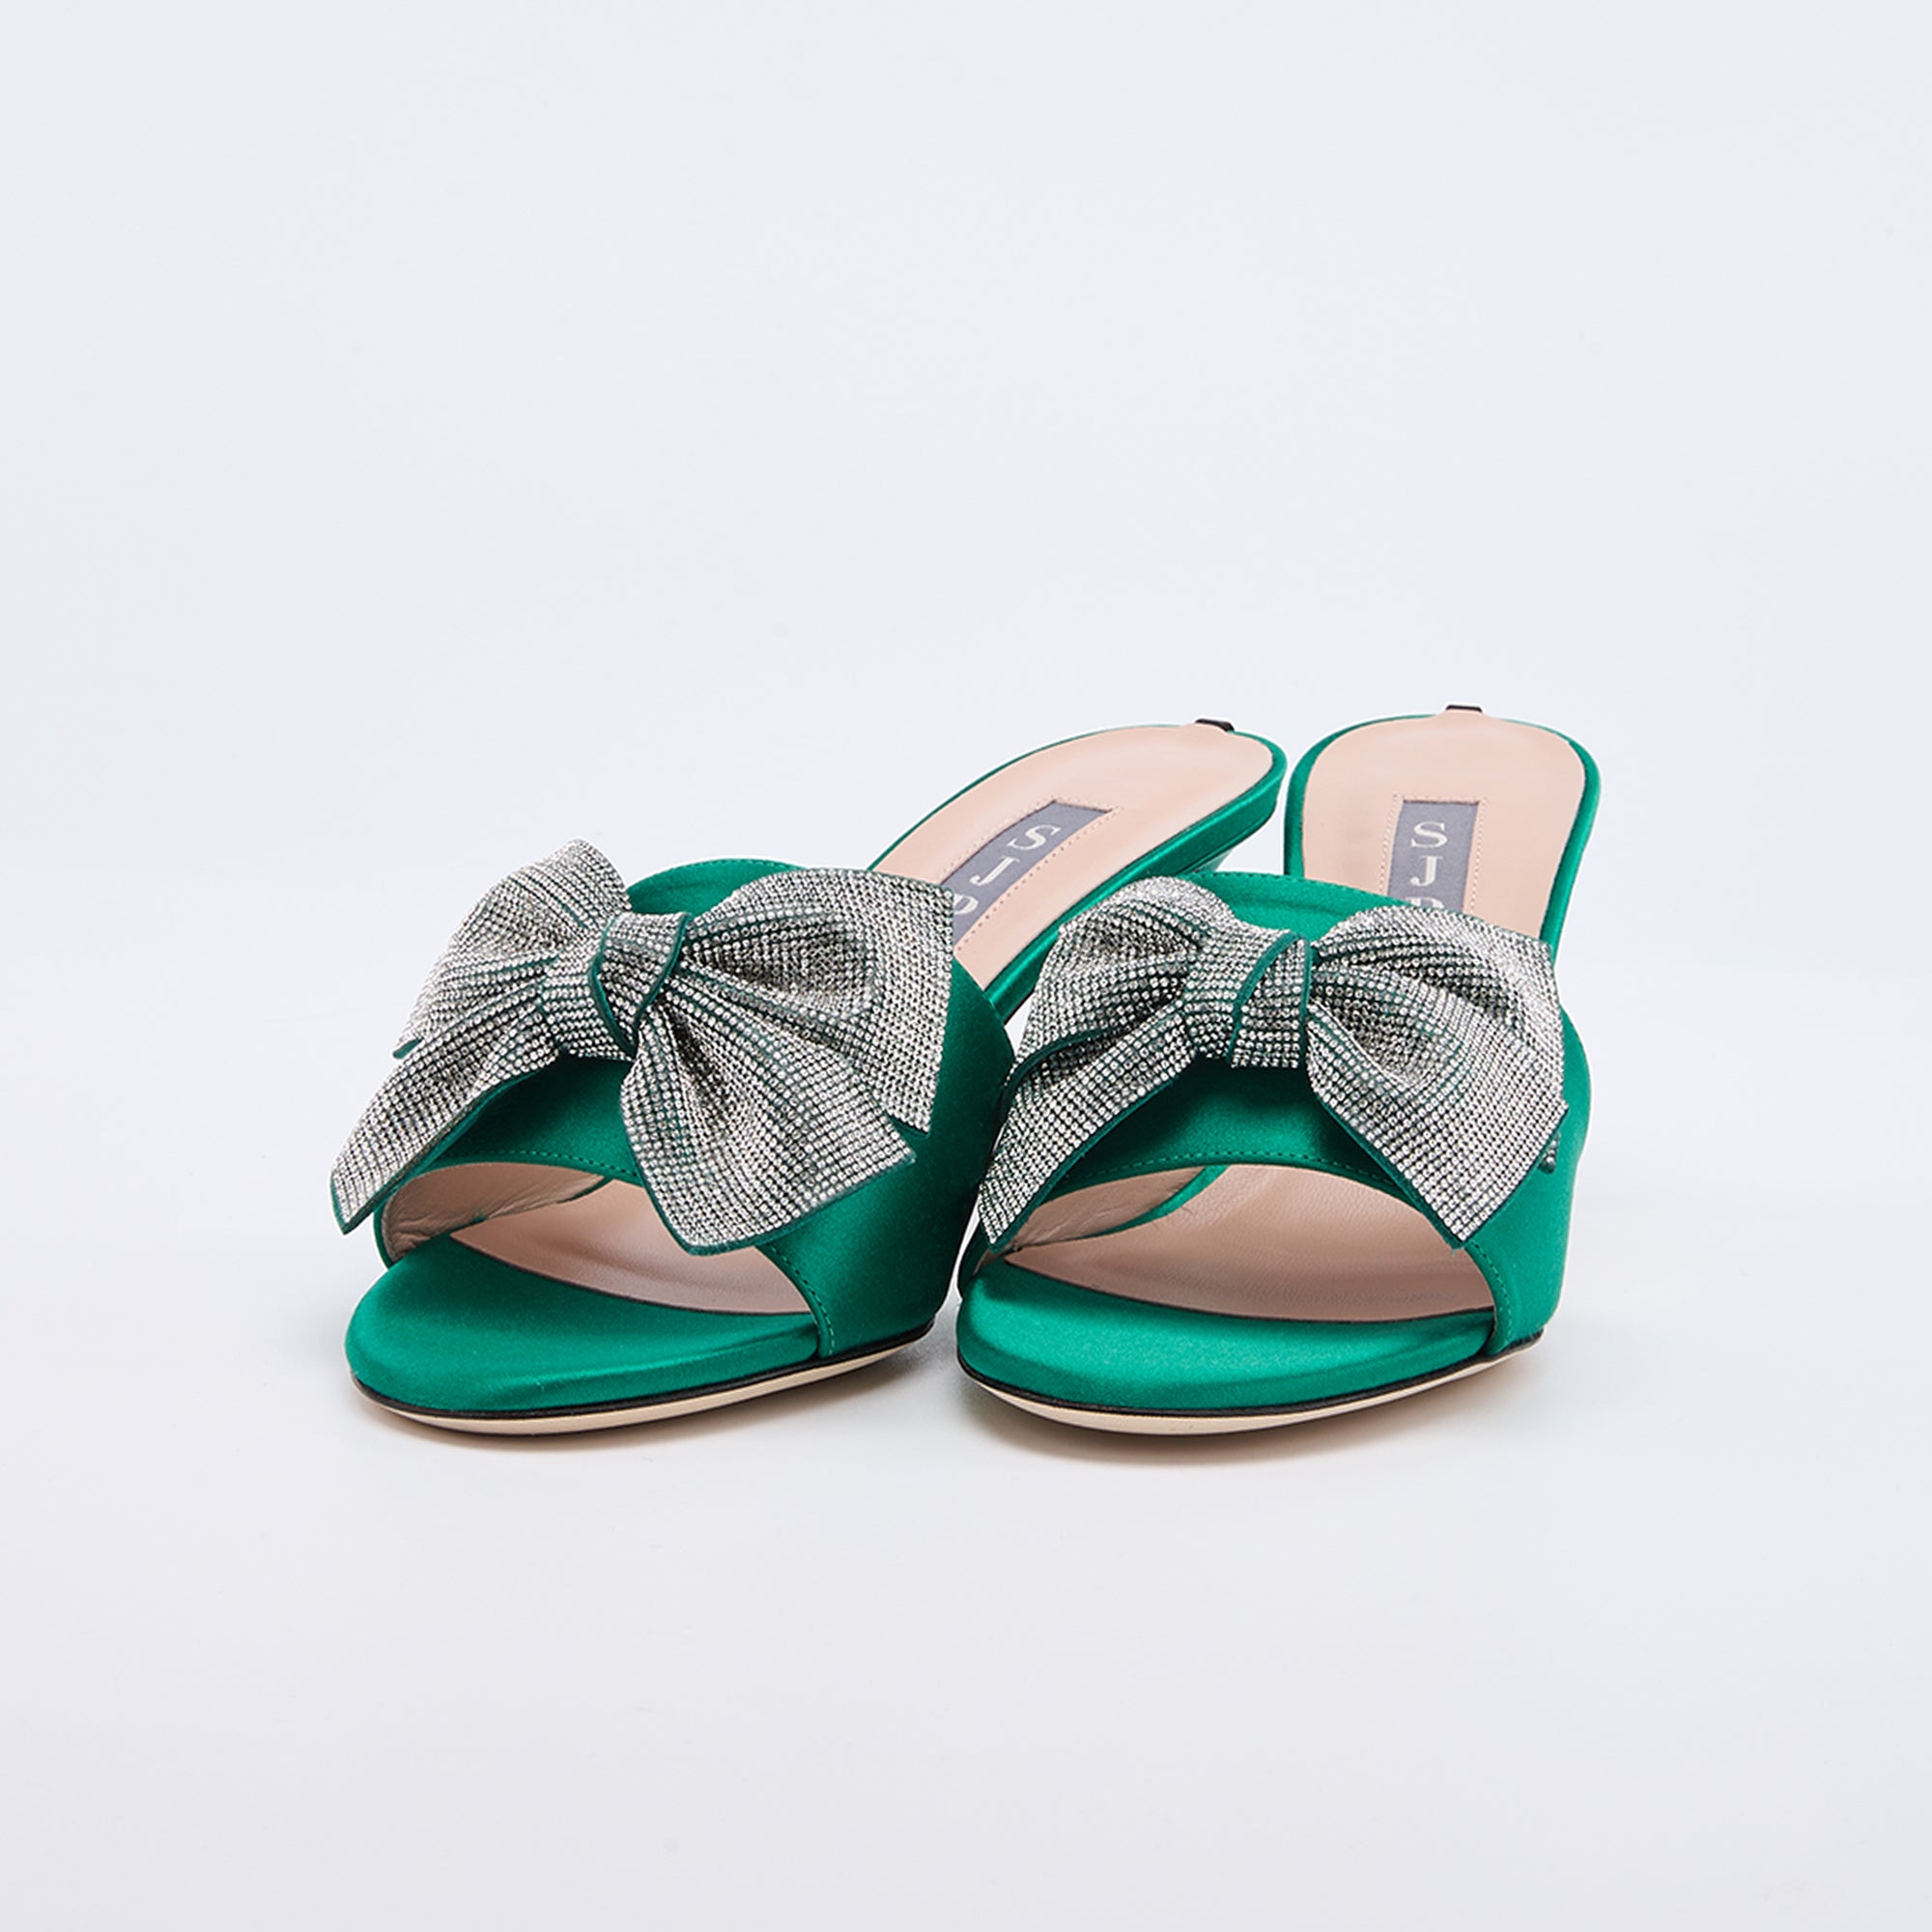 SJP by Sarah Jessica Parker Alcott 70mm Emerald Green Satin Sandals